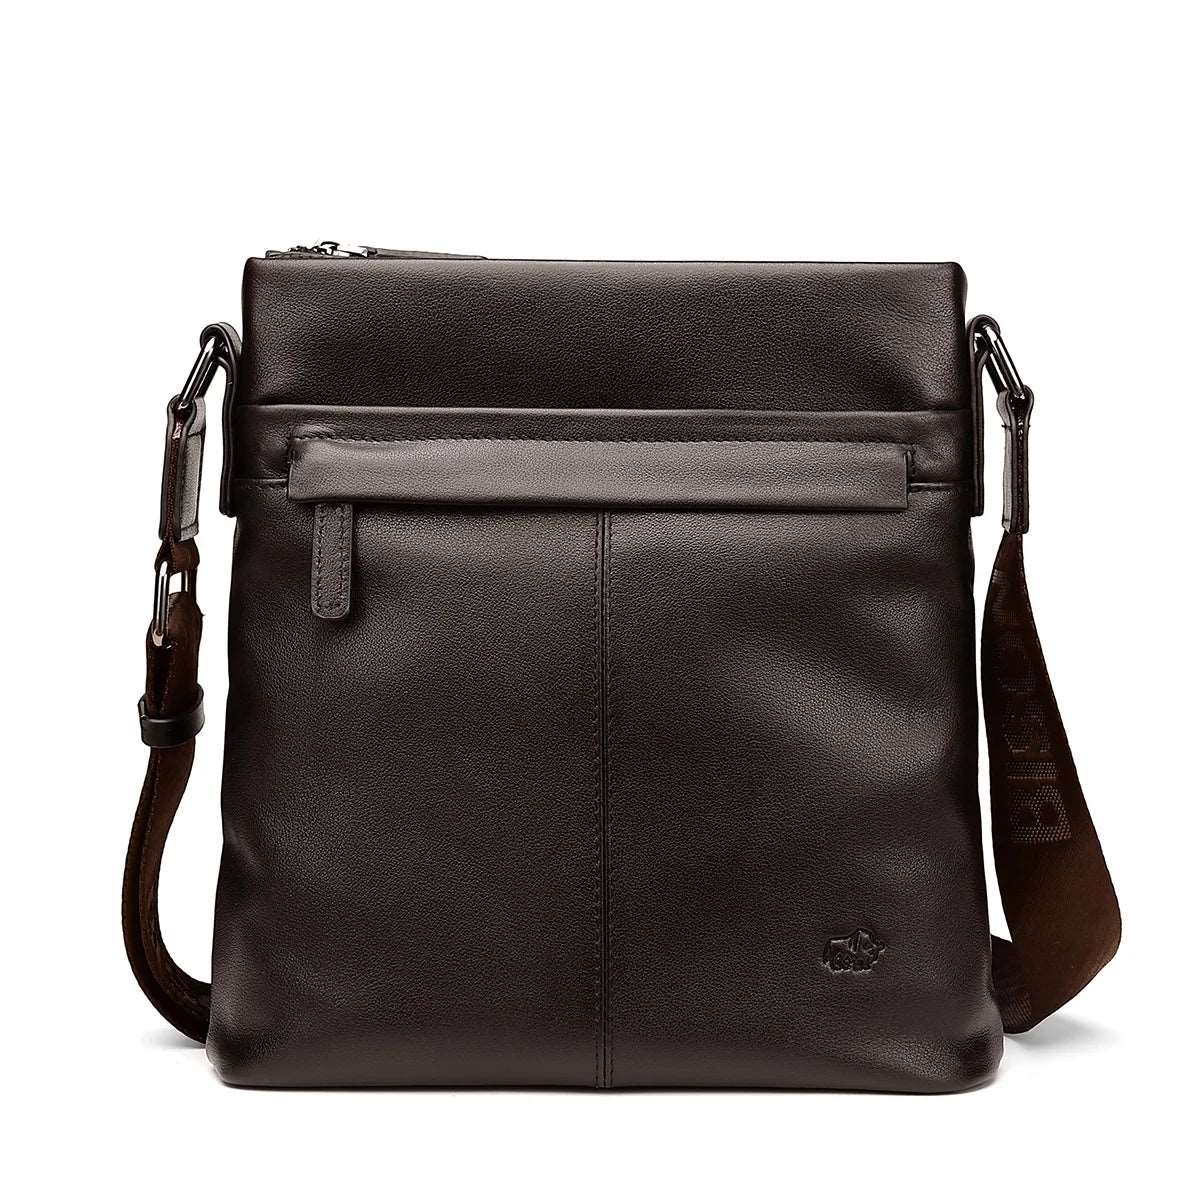 BISON DENIM Genuine Leather Men Shoulder Bag N2357 coffee